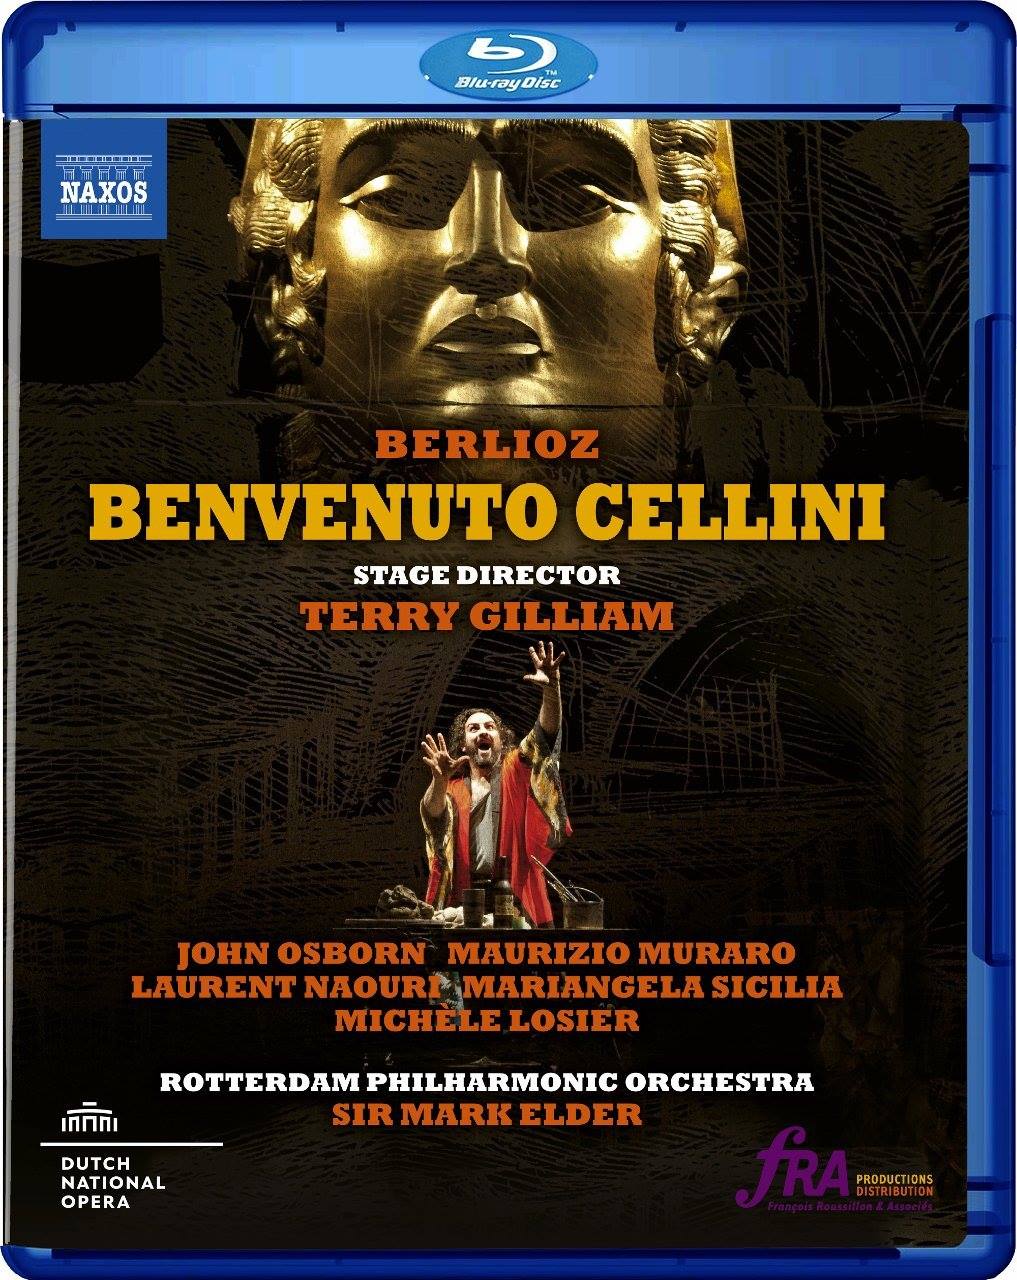 Berlioz "Benvenuto Cellini" DVD/Blue Ray